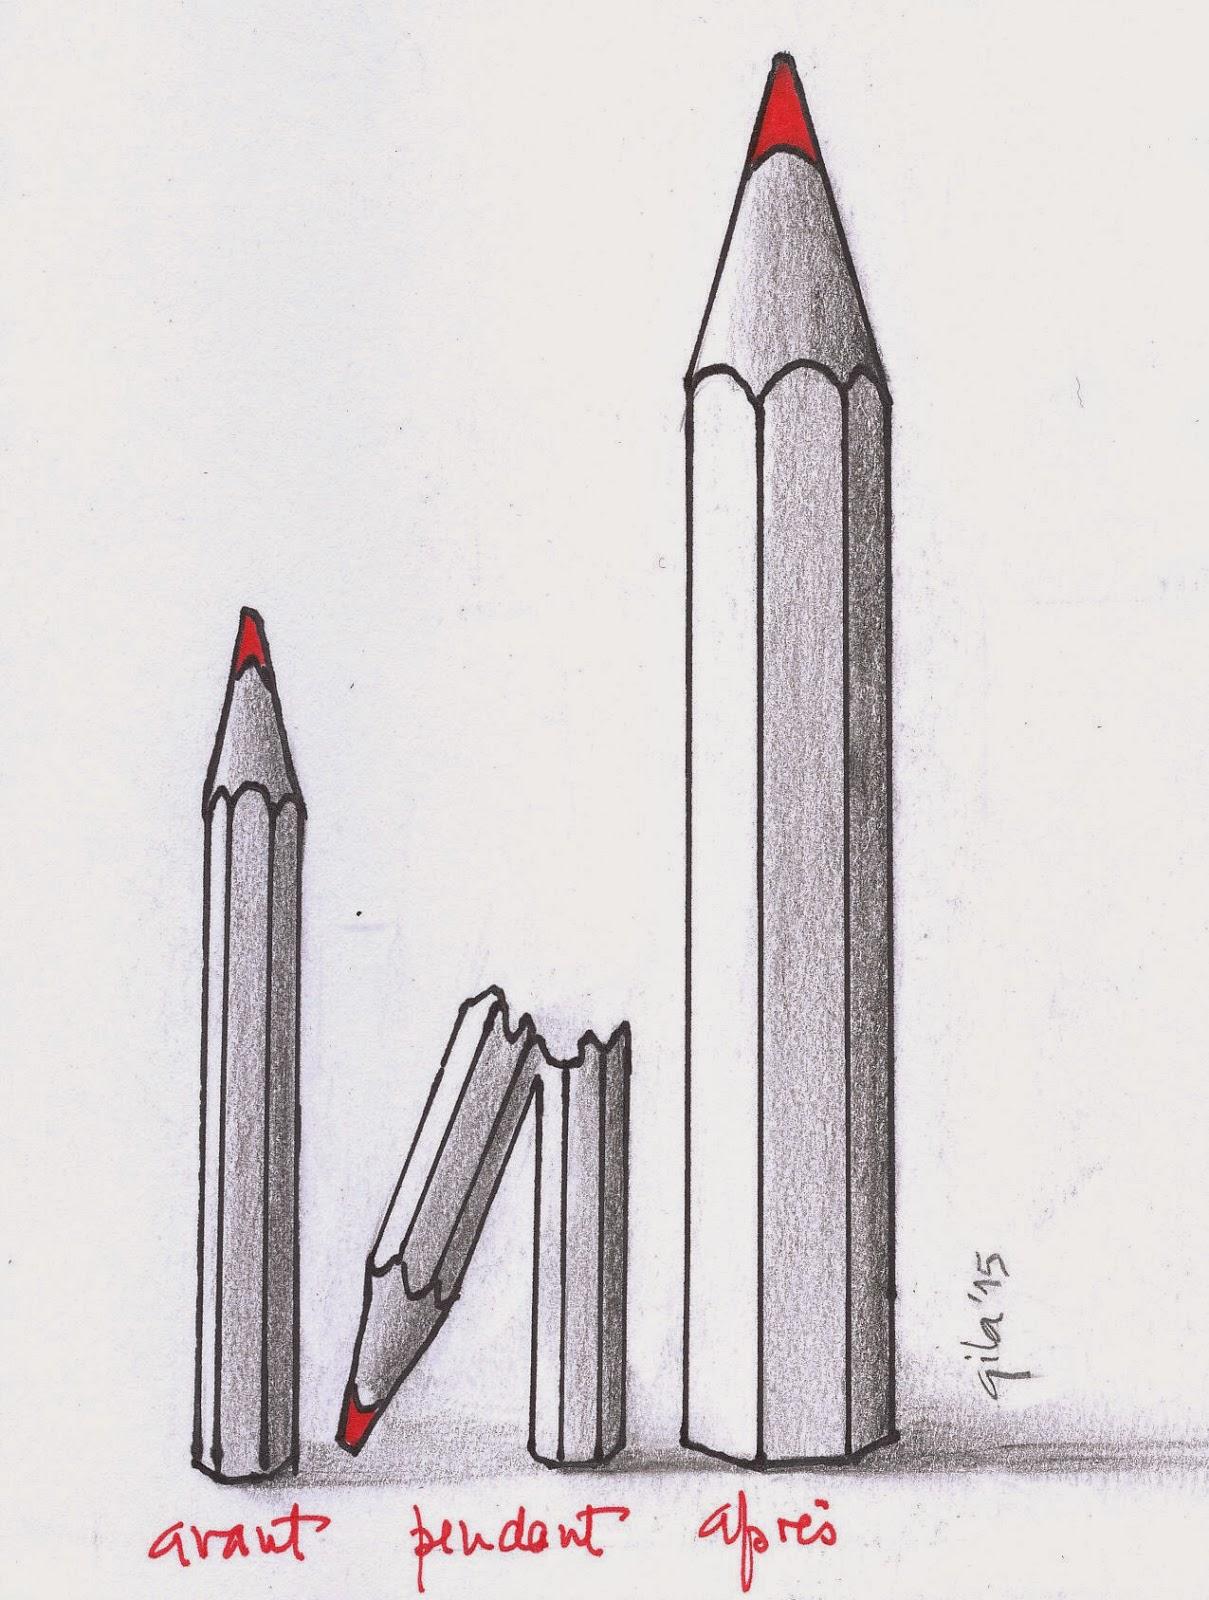 Charlie Hebdo...